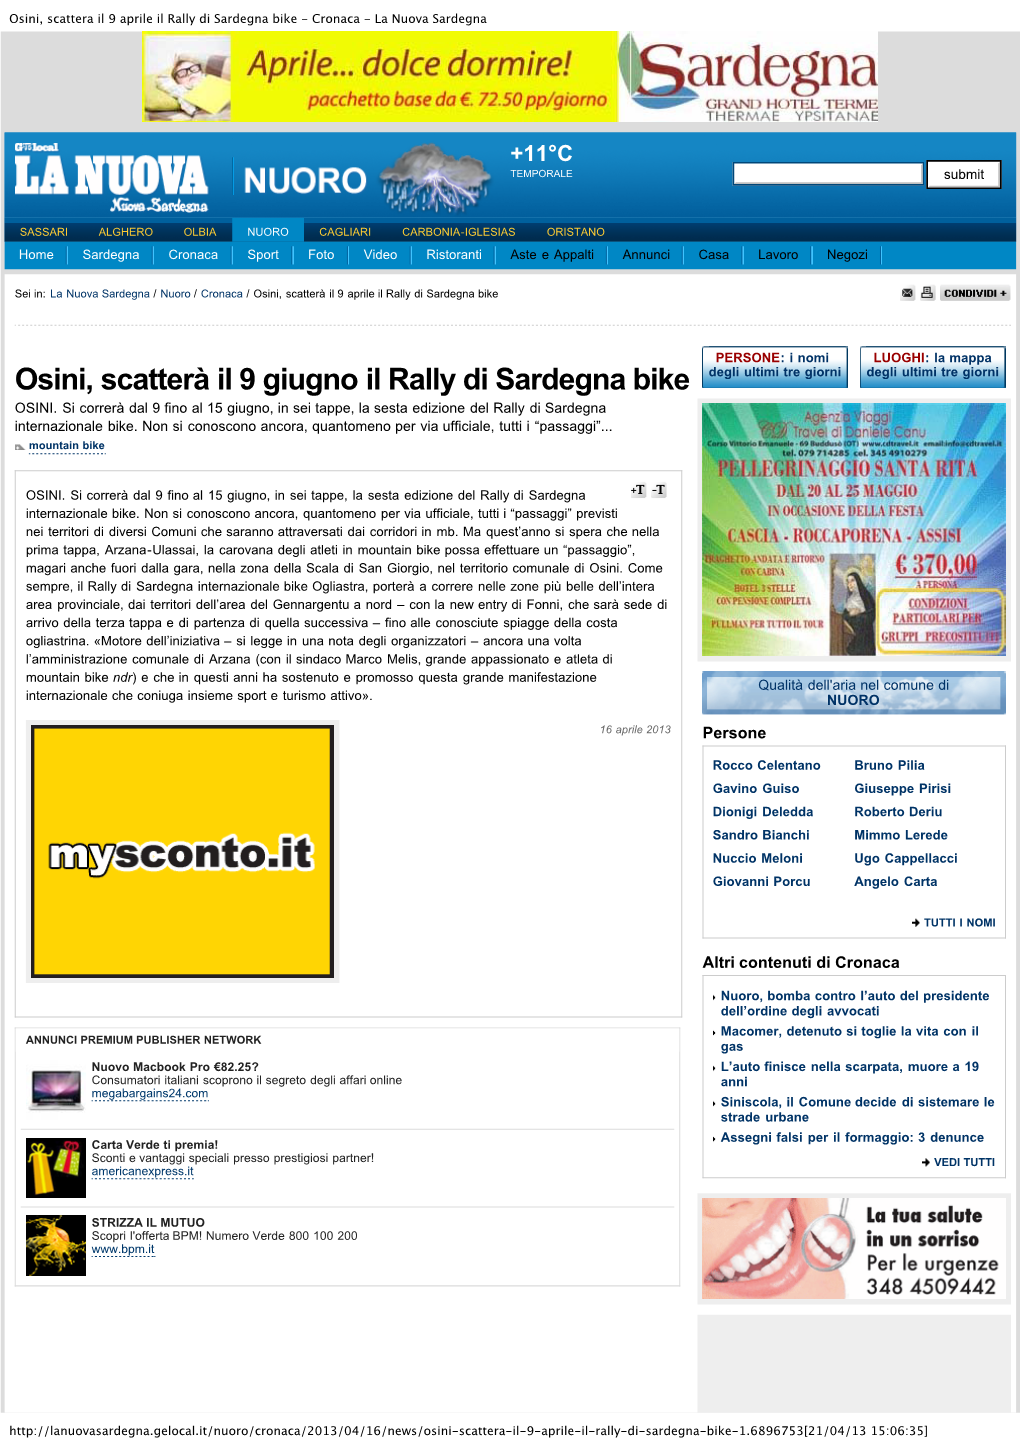 Osini, Scattera Il 9 Aprile Il Rally Di Sardegna Bike - Cronaca - La Nuova Sardegna